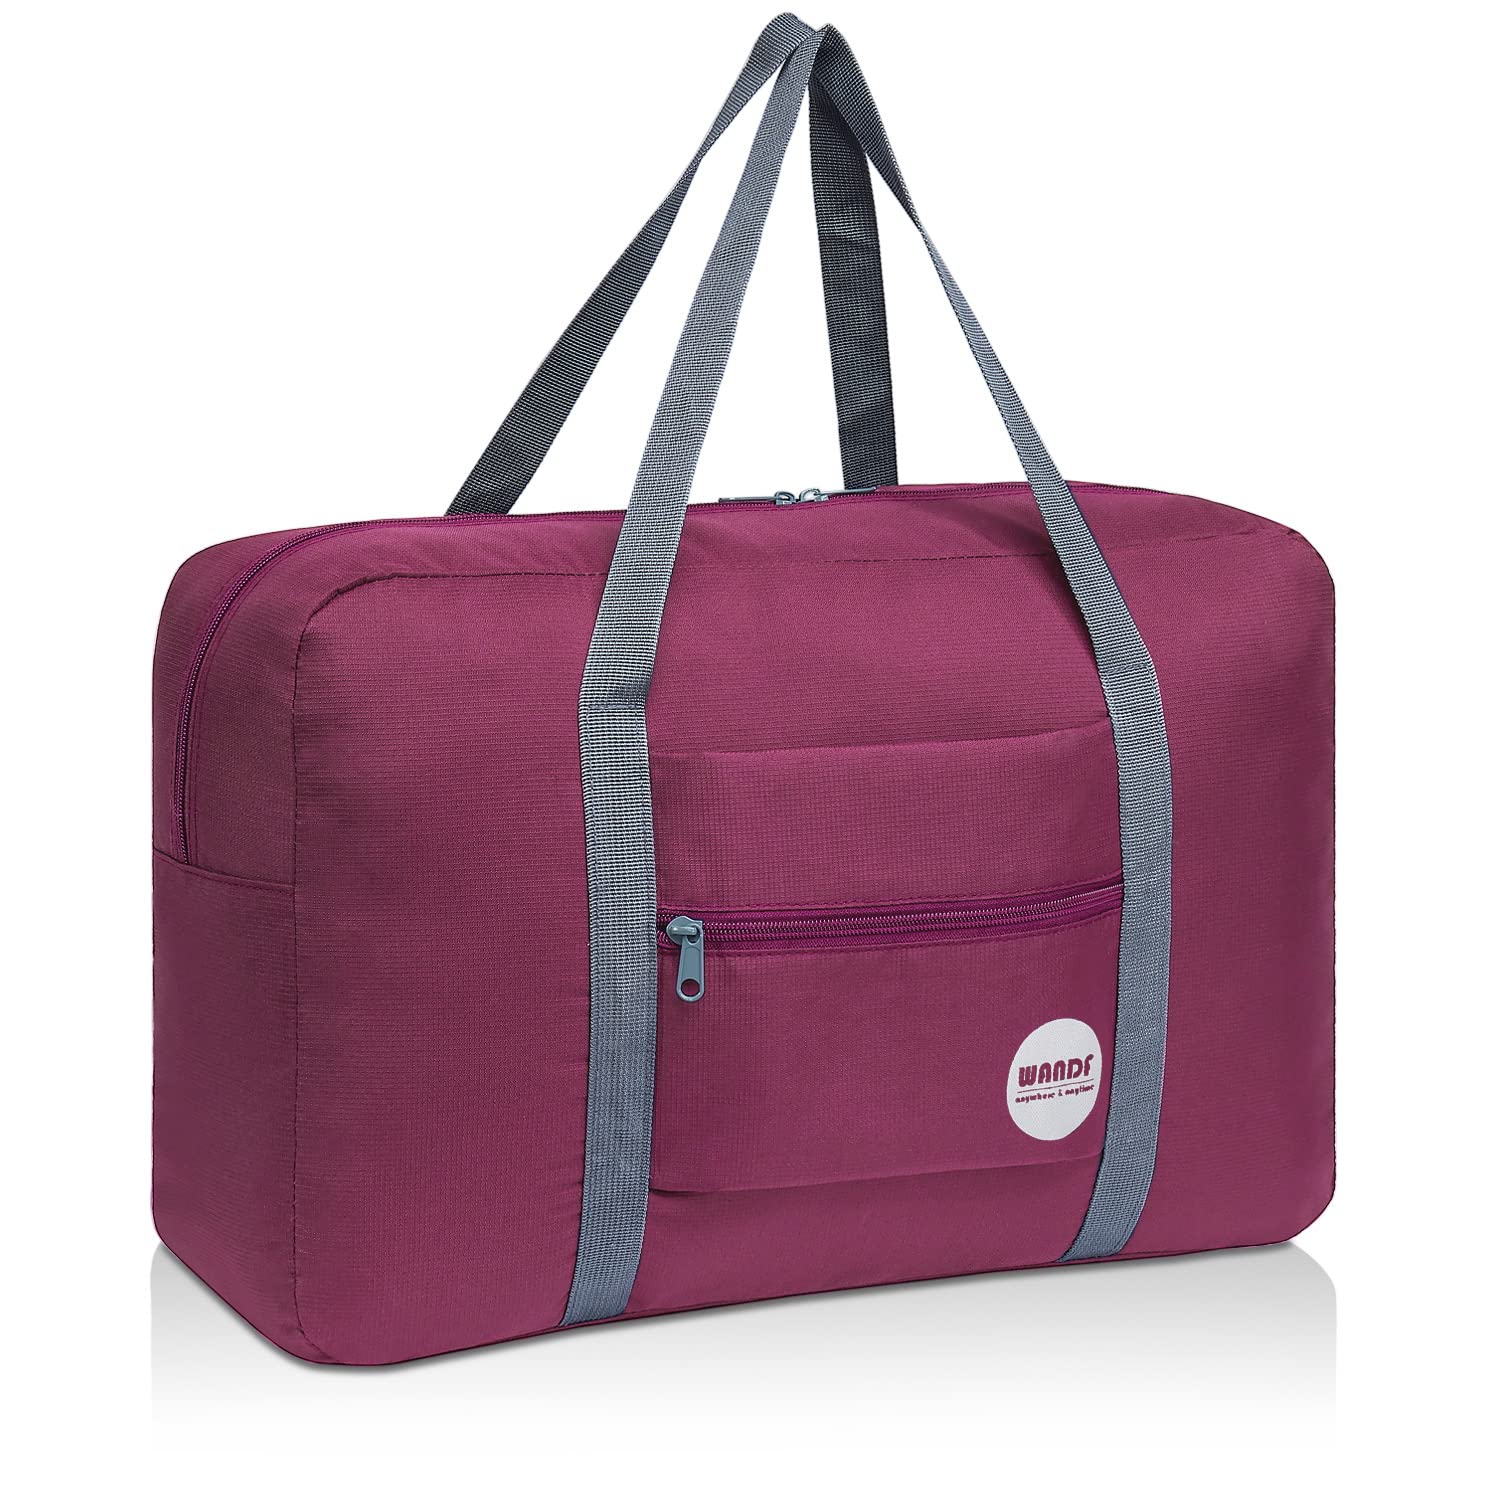 Travel Duffel Bag,Sports Tote Gym Bag,Shoulder Weekender Overnight Bag for  Women - Walmart.com